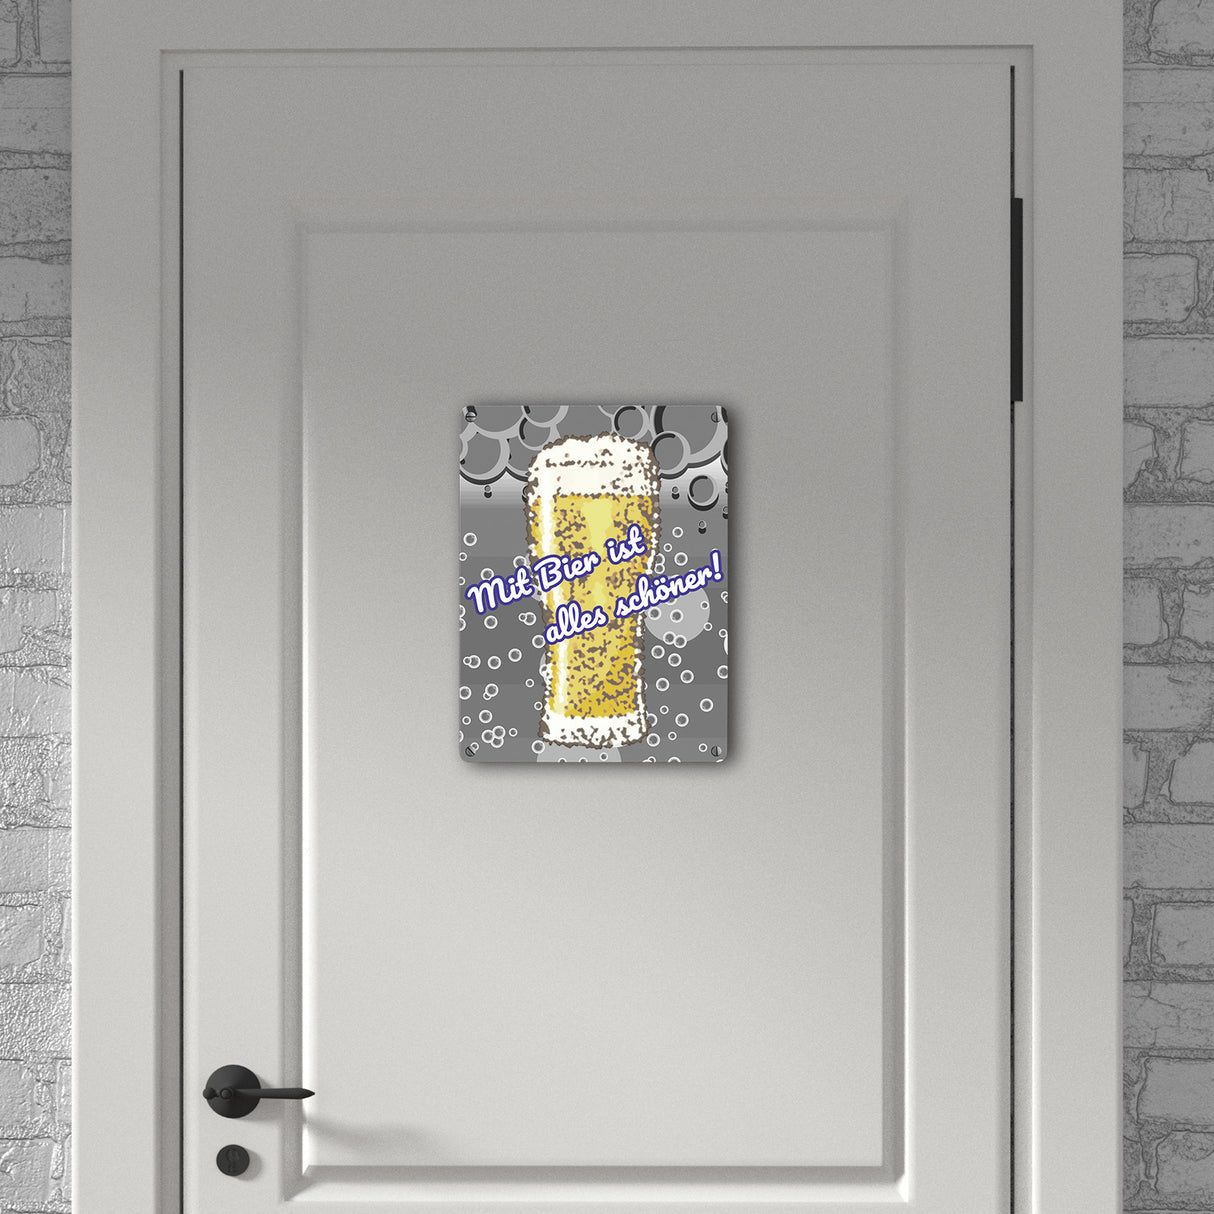 Metallschild in 15x20 cm im Bierdesign mit Spruch: Mit Bier ist alles schöner!